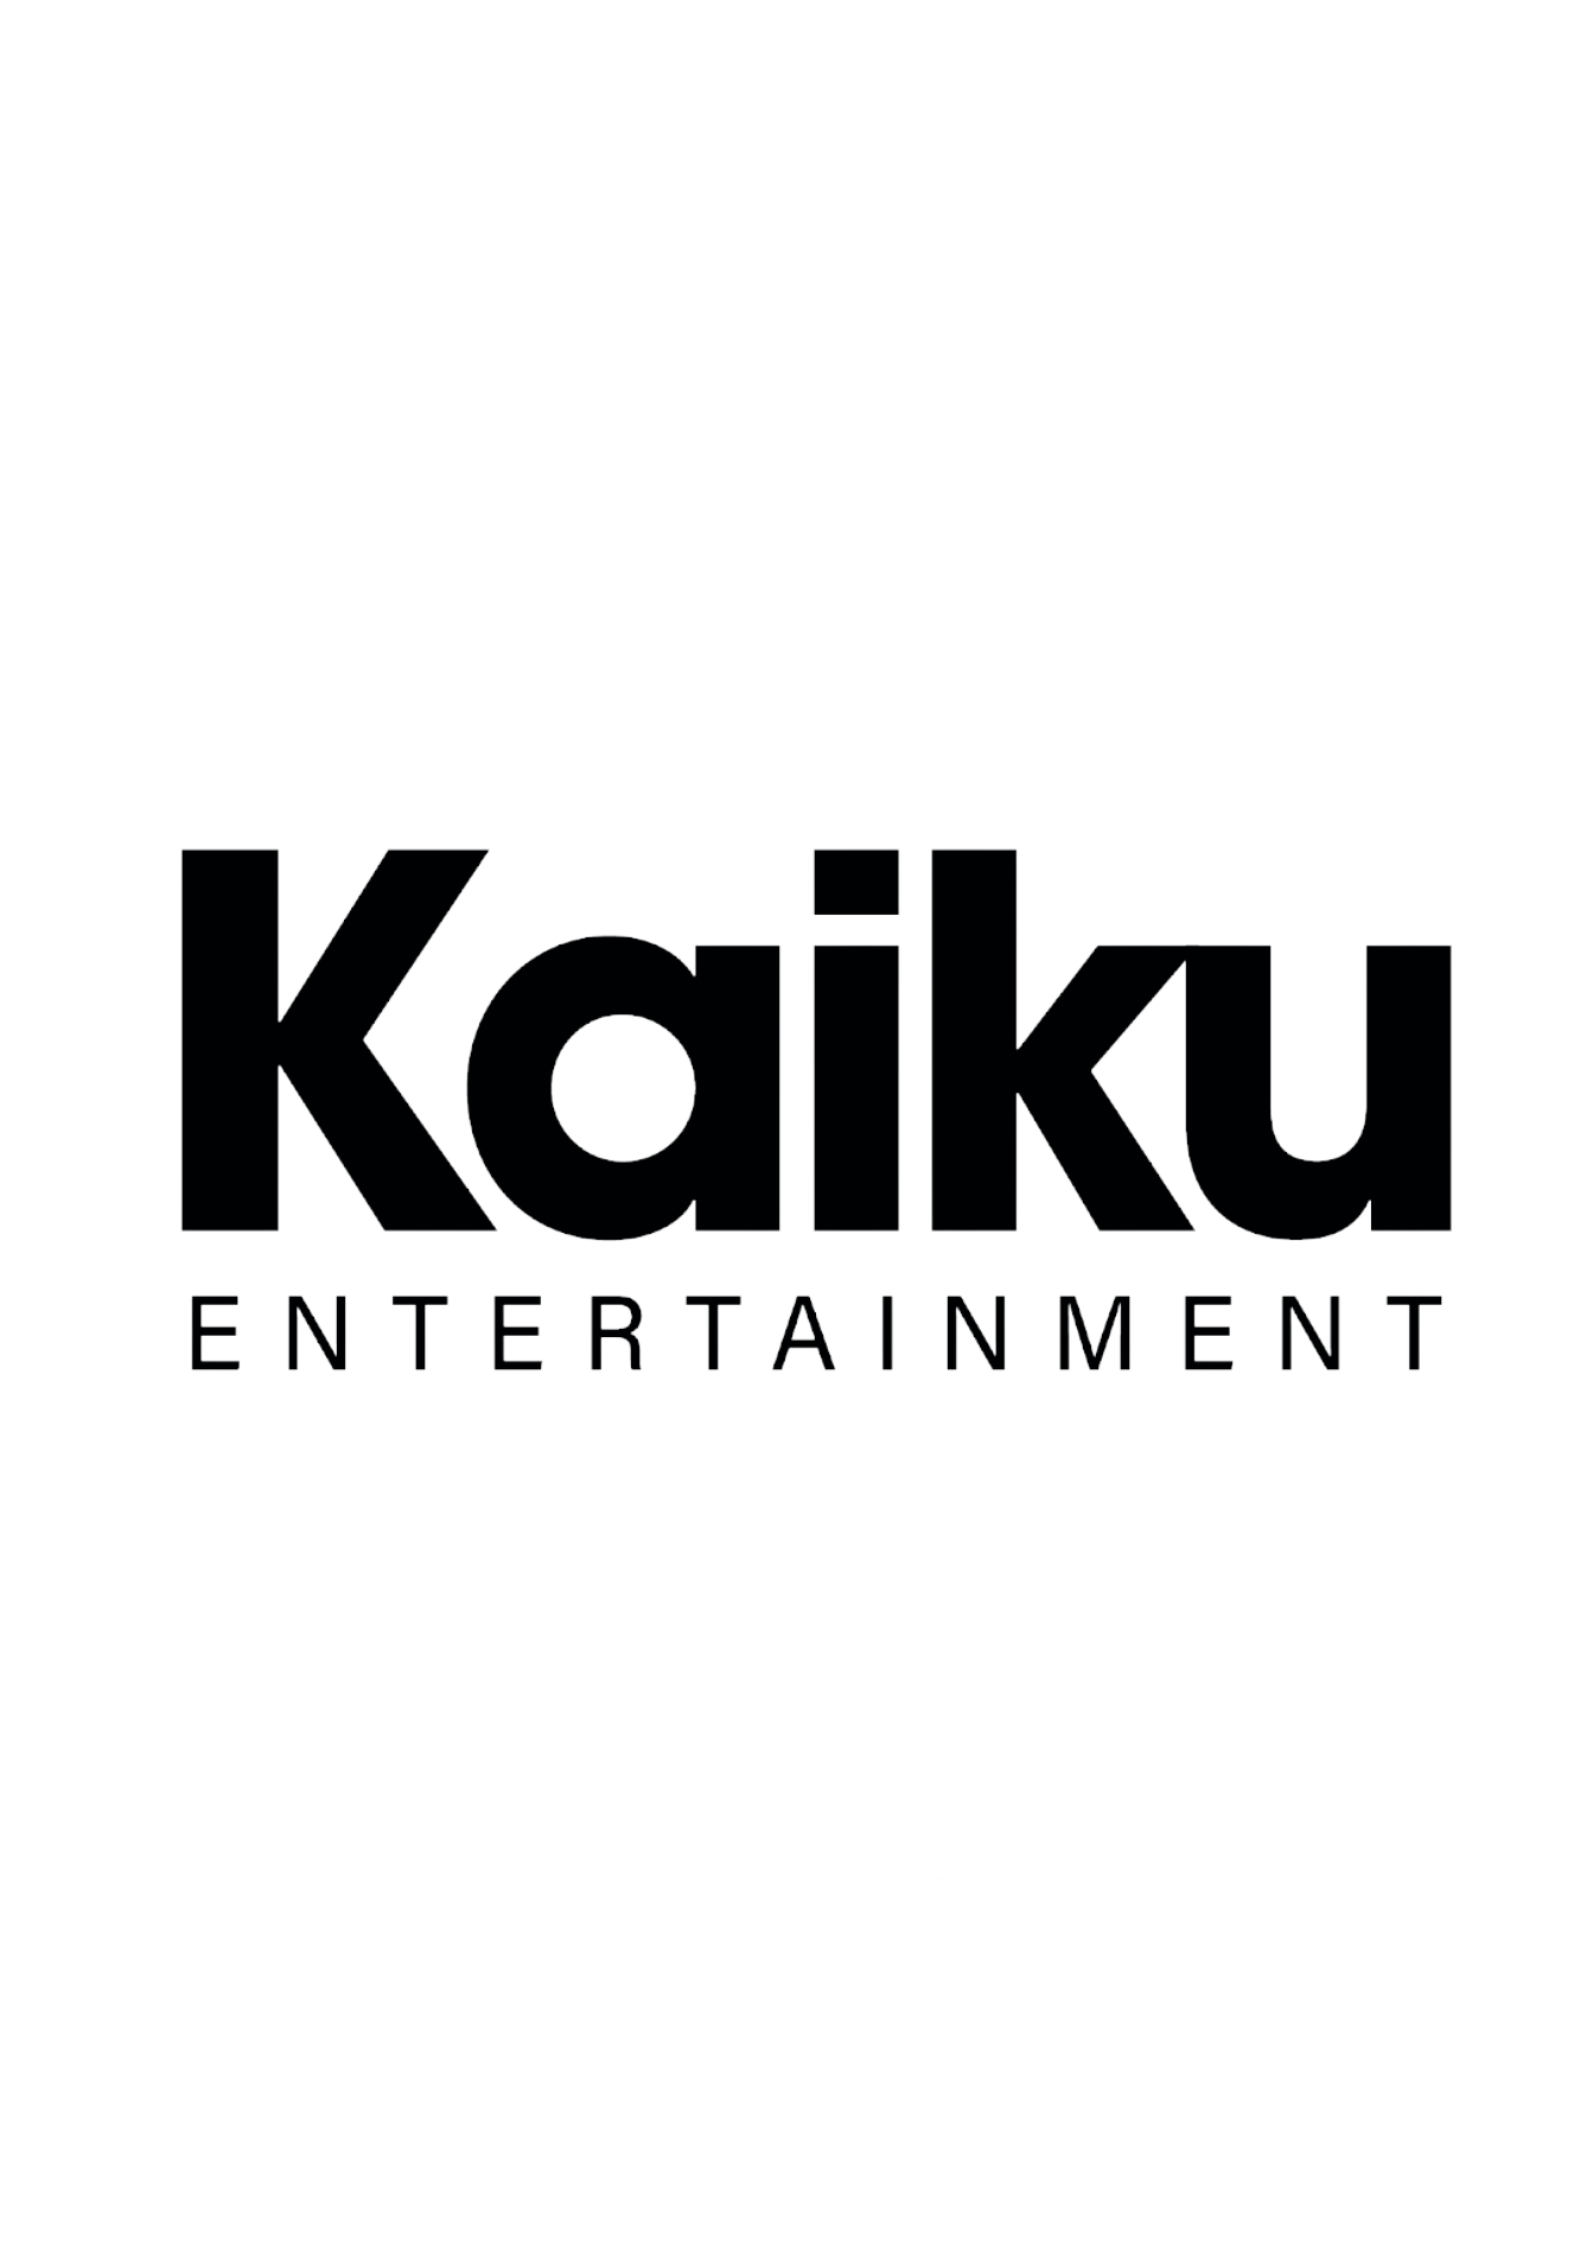 Kaiku Entertainment logo.png